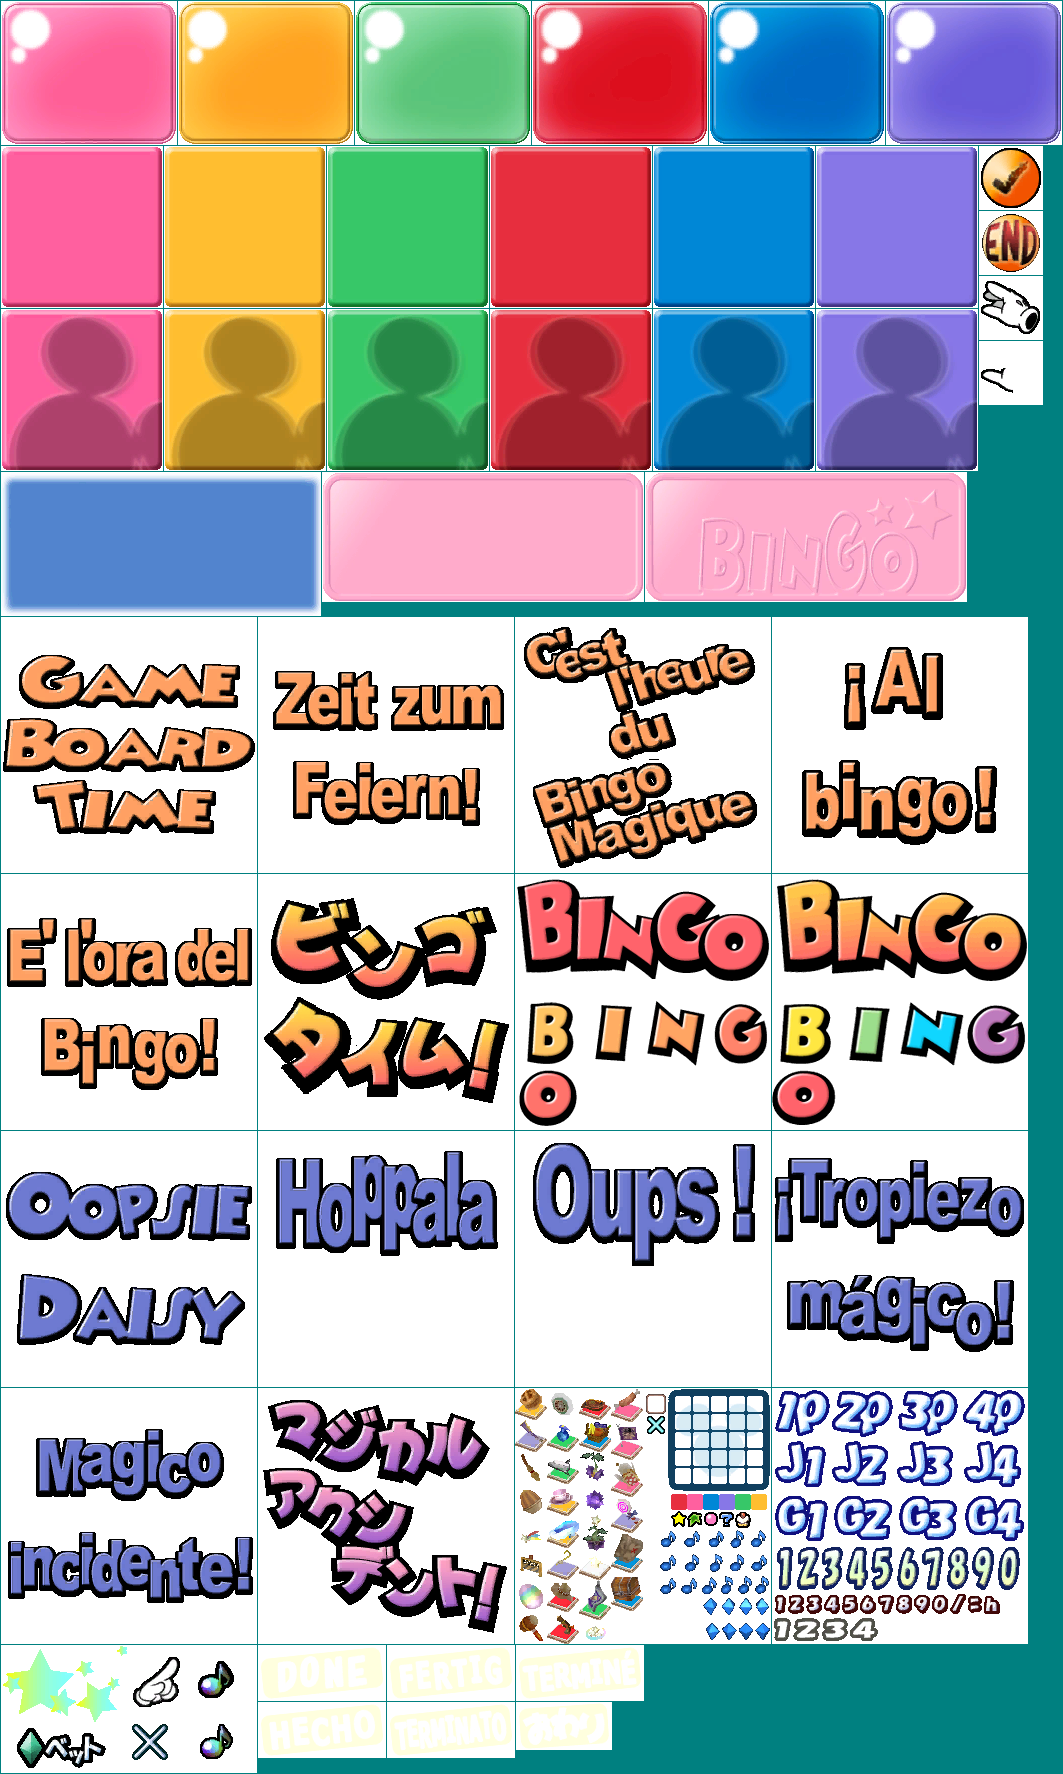 Disney's Party - Bingo Elements